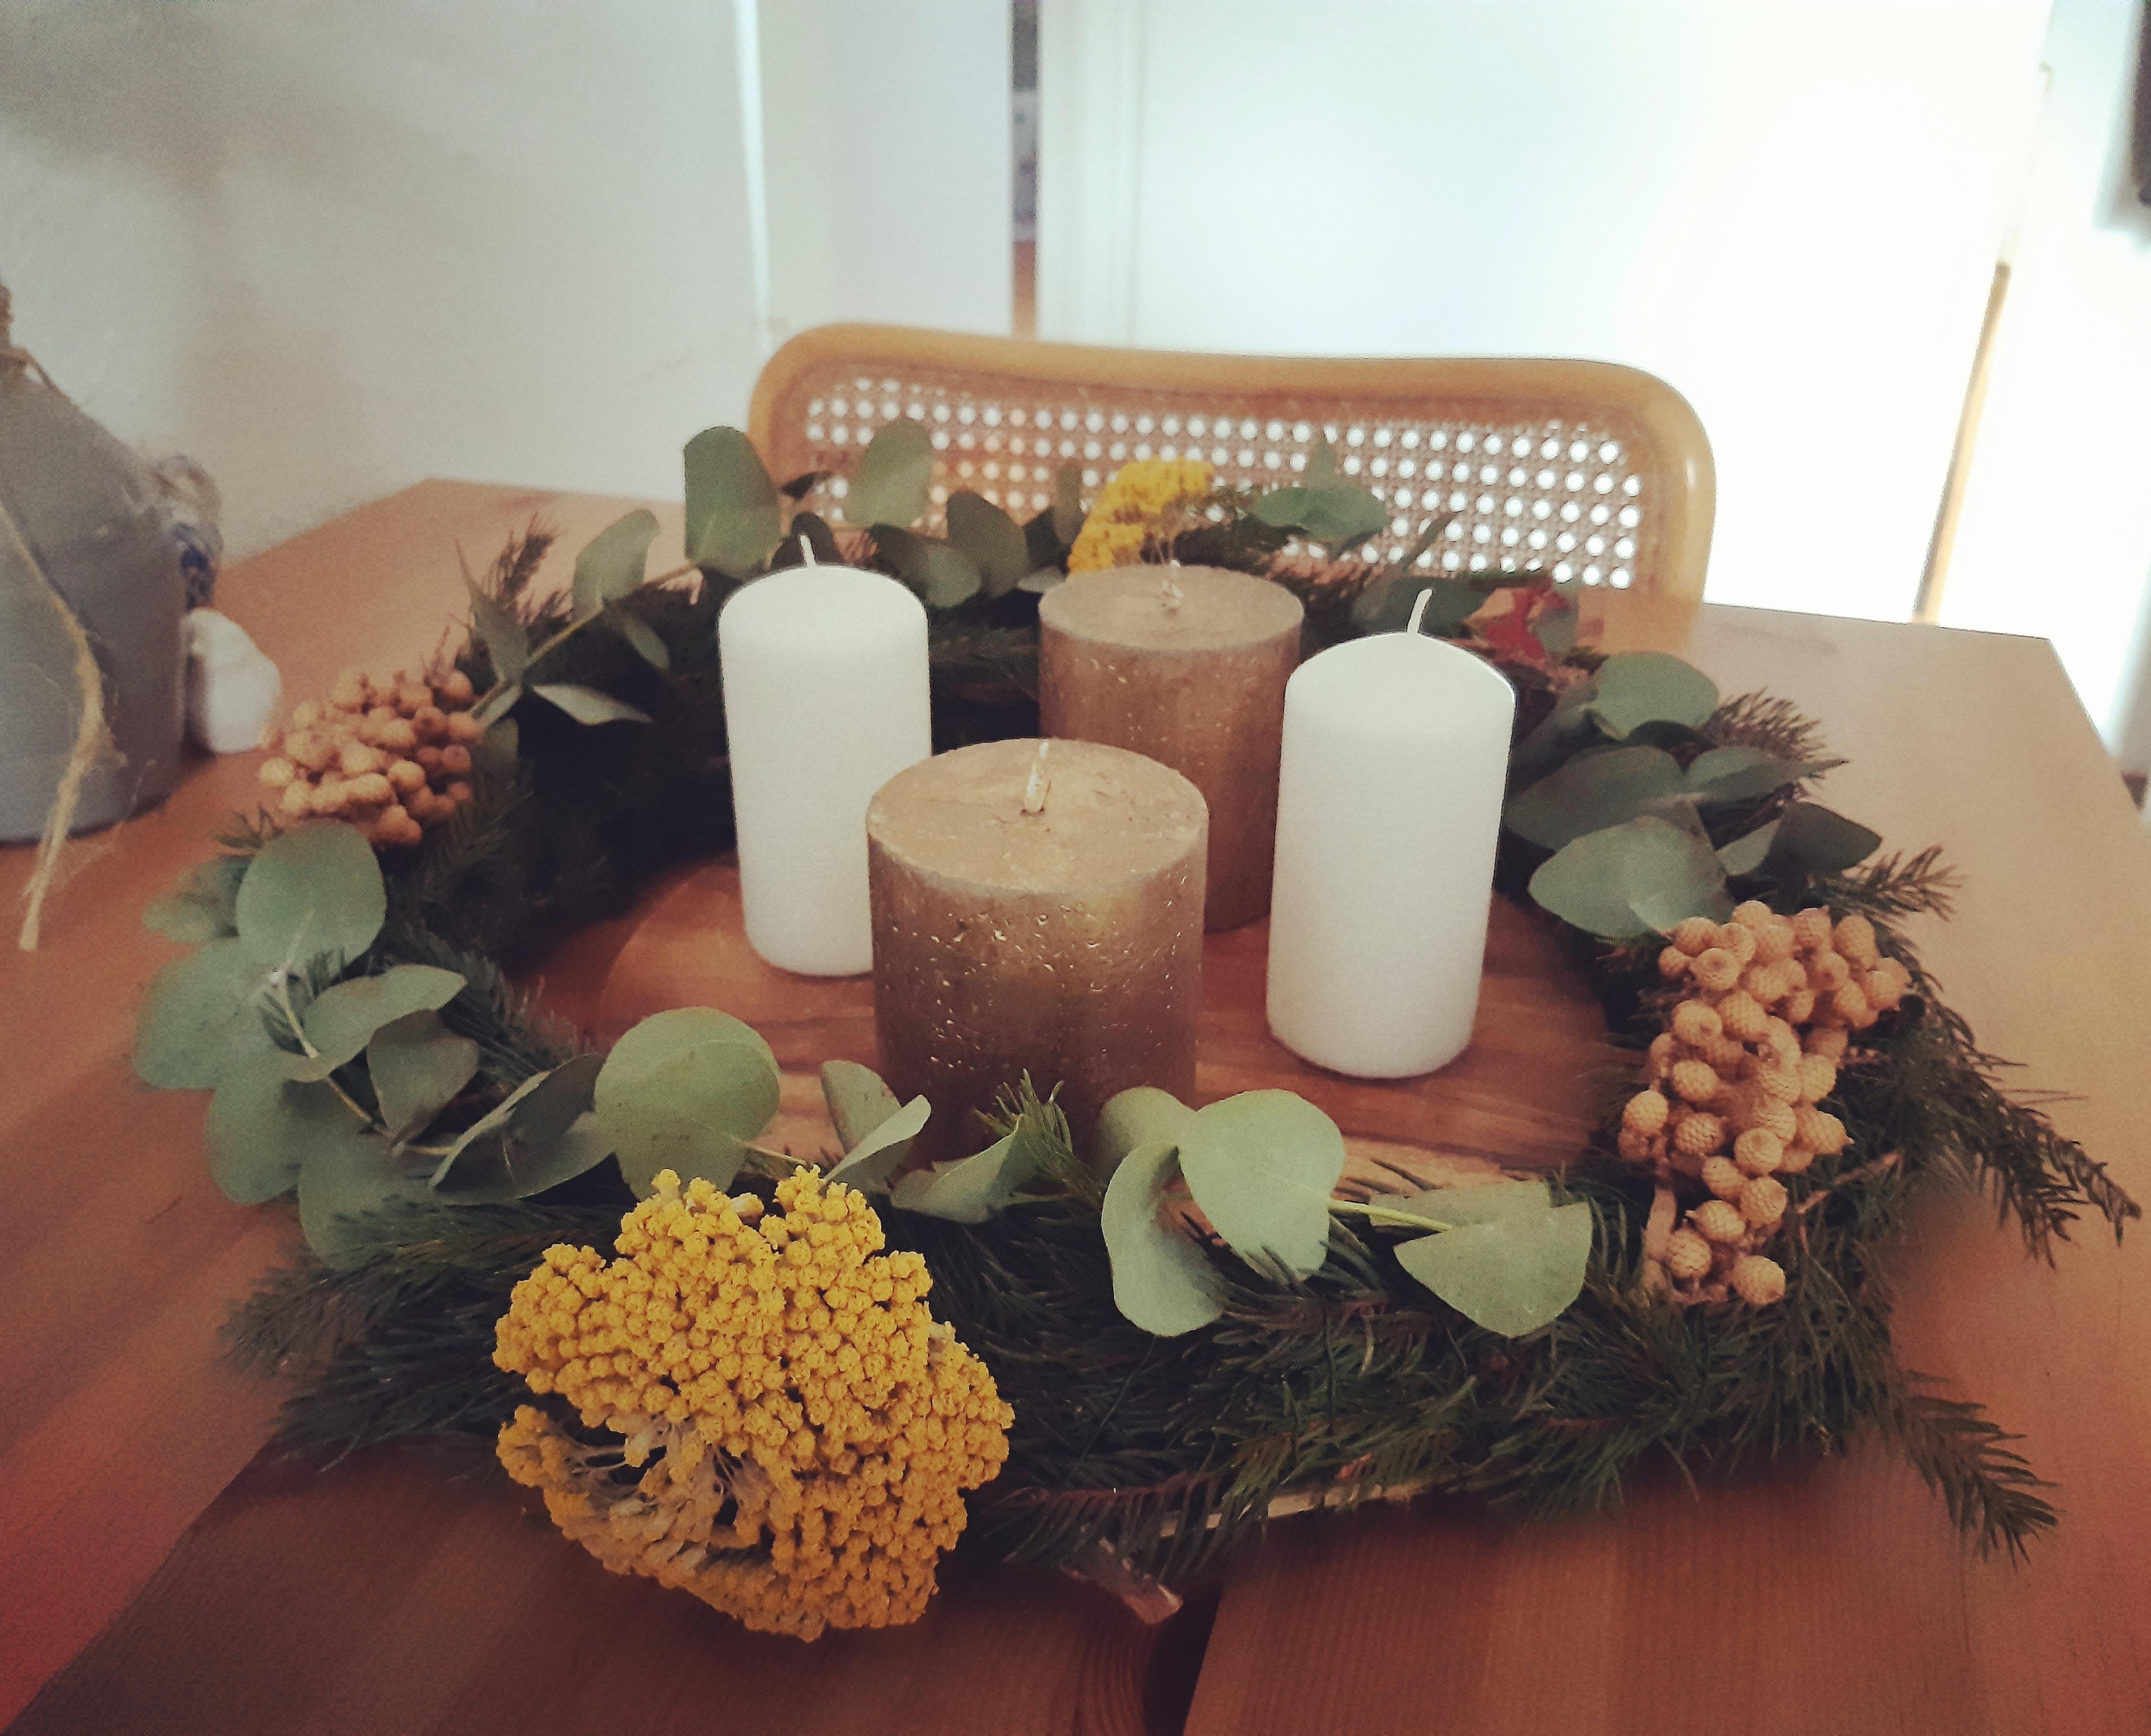 DIY Adventskranz #weihnachtsdeko #adventsgesteck #kranzbinden #adventskranz #eukalyptus 